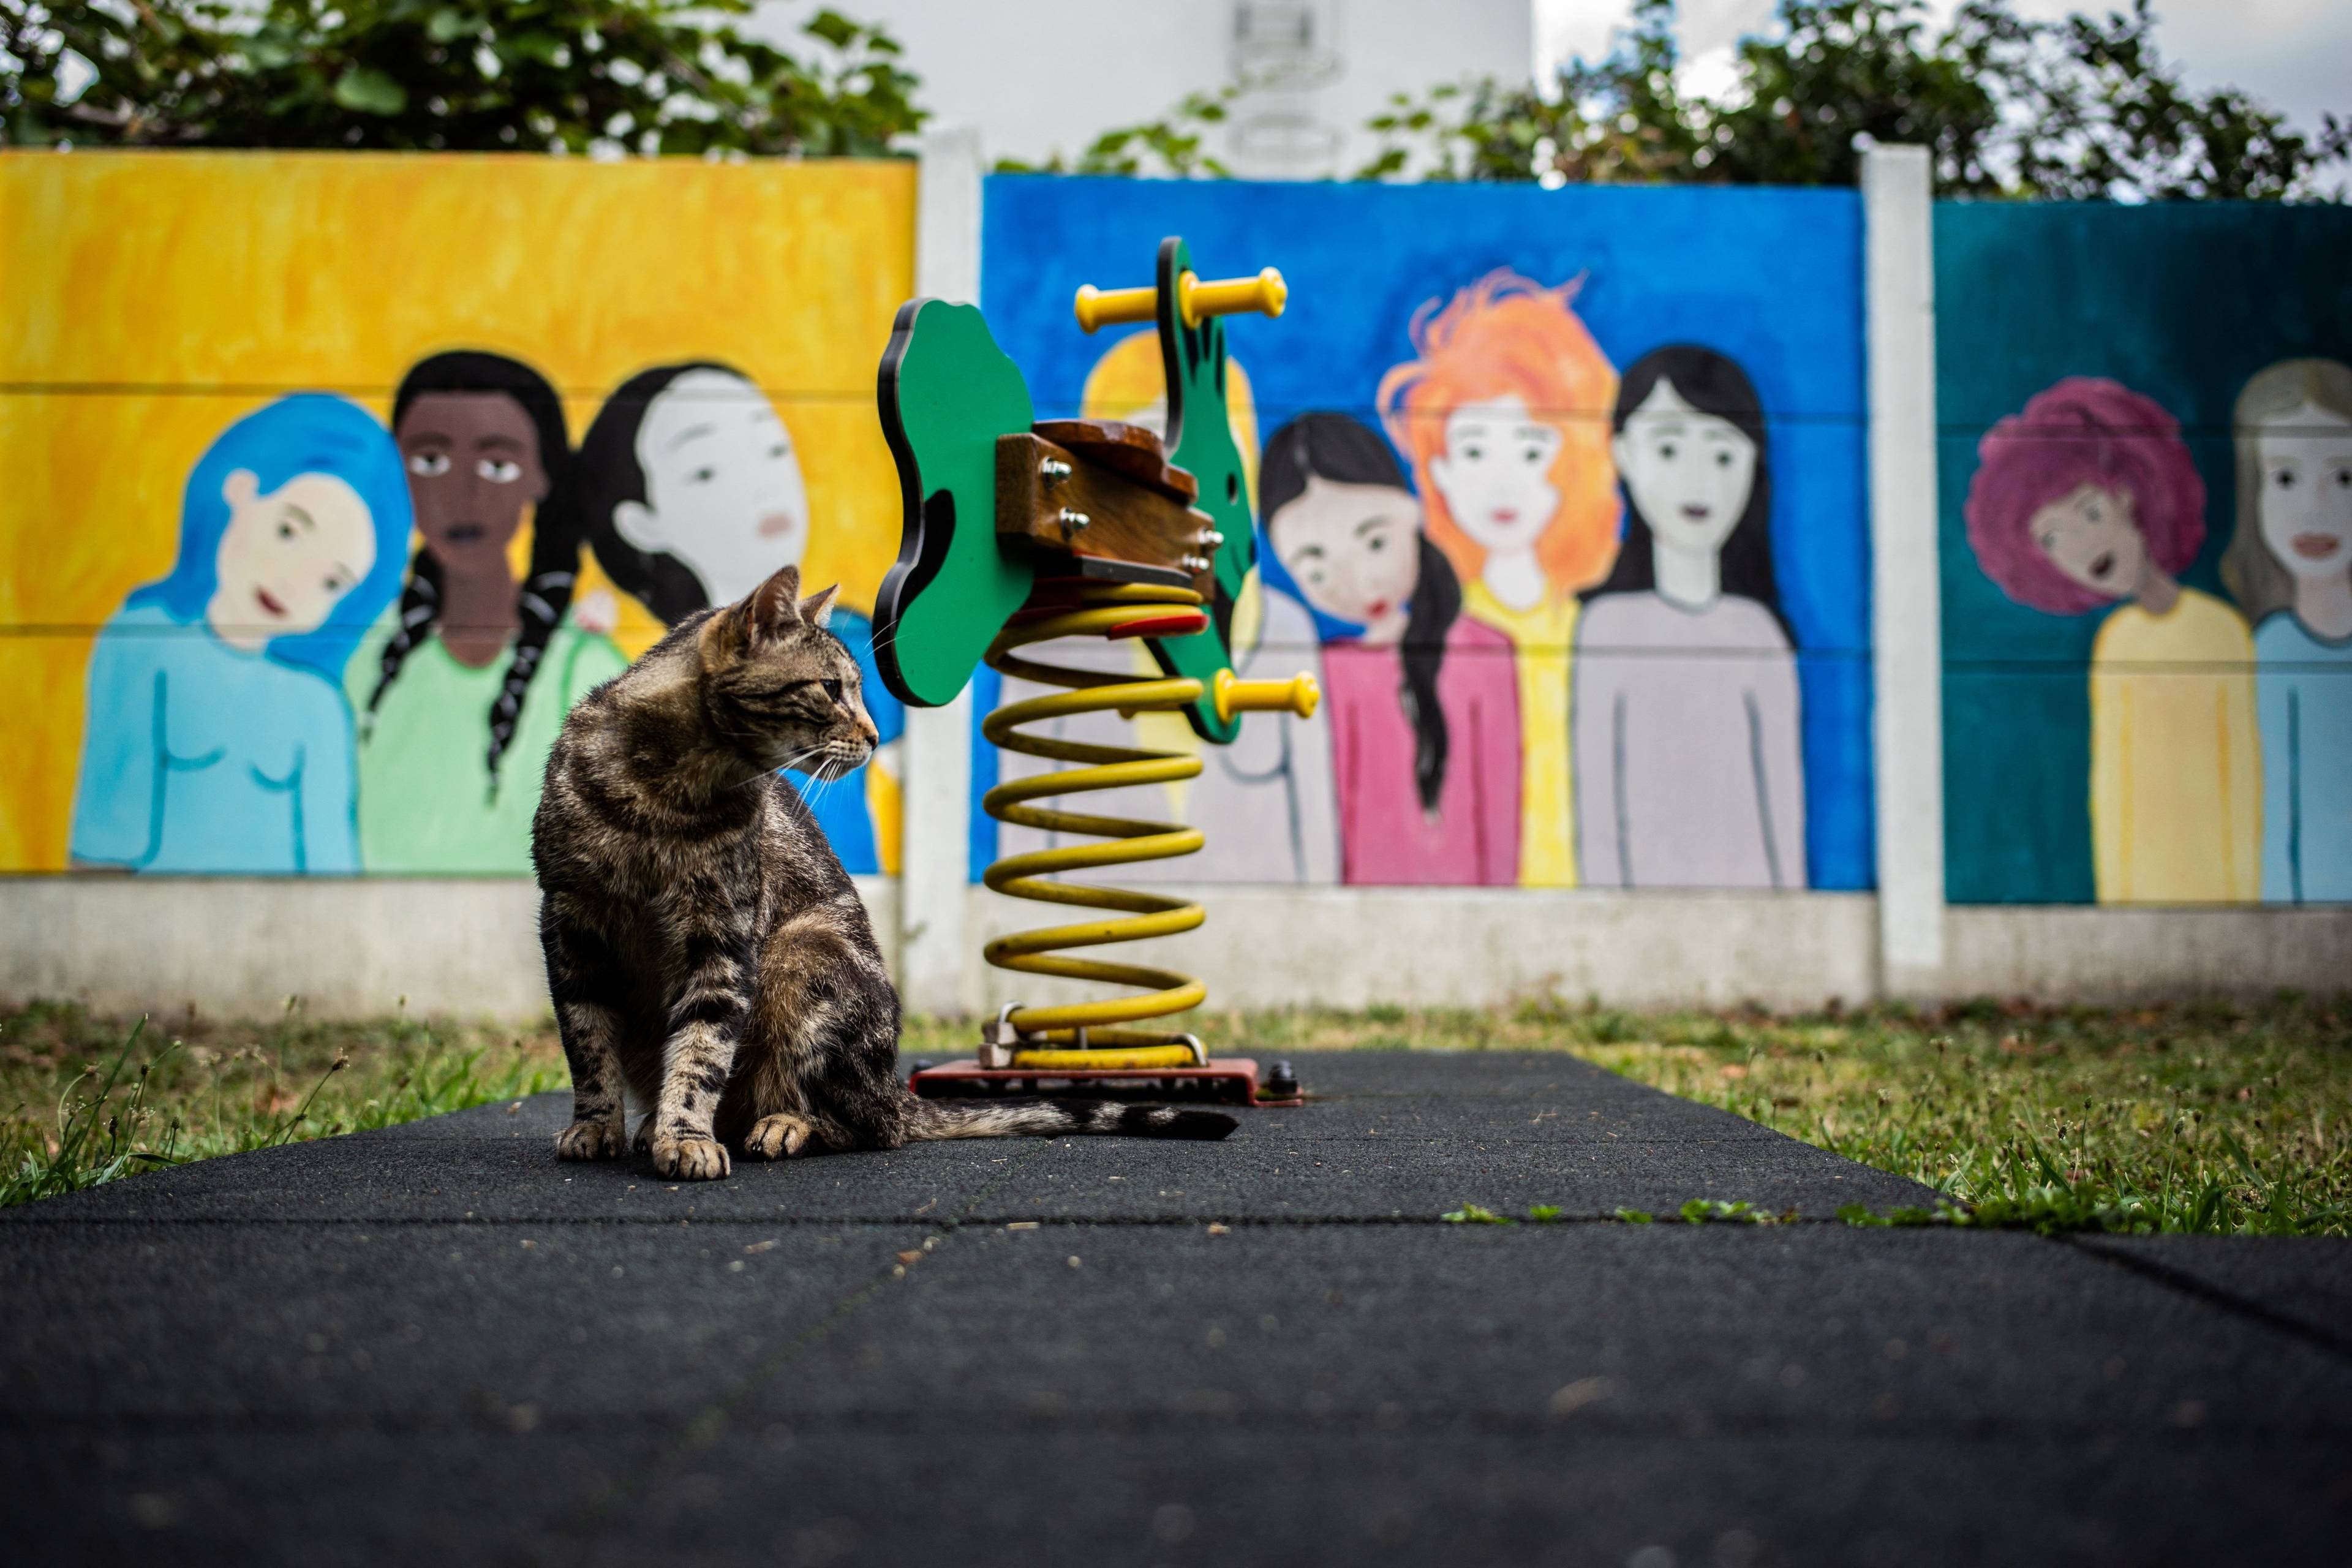 Plac zabaw z pręgowanym kotem na pierwszym planie, w tle płot z kolorowym muralem przedstawiającym kobiety różnych ras. Dyrektywa antyprzemocowa